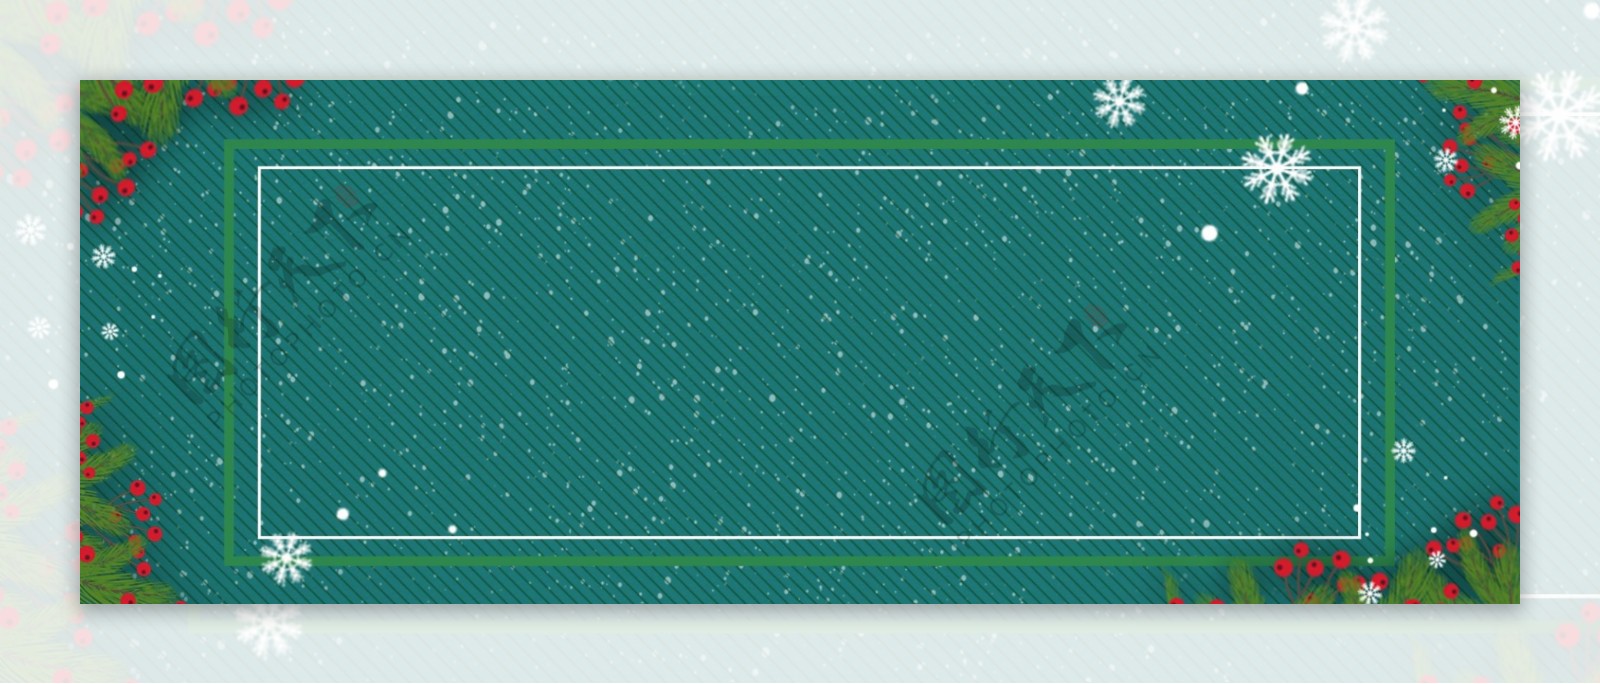 圣诞雪花线框绿色背景Banner